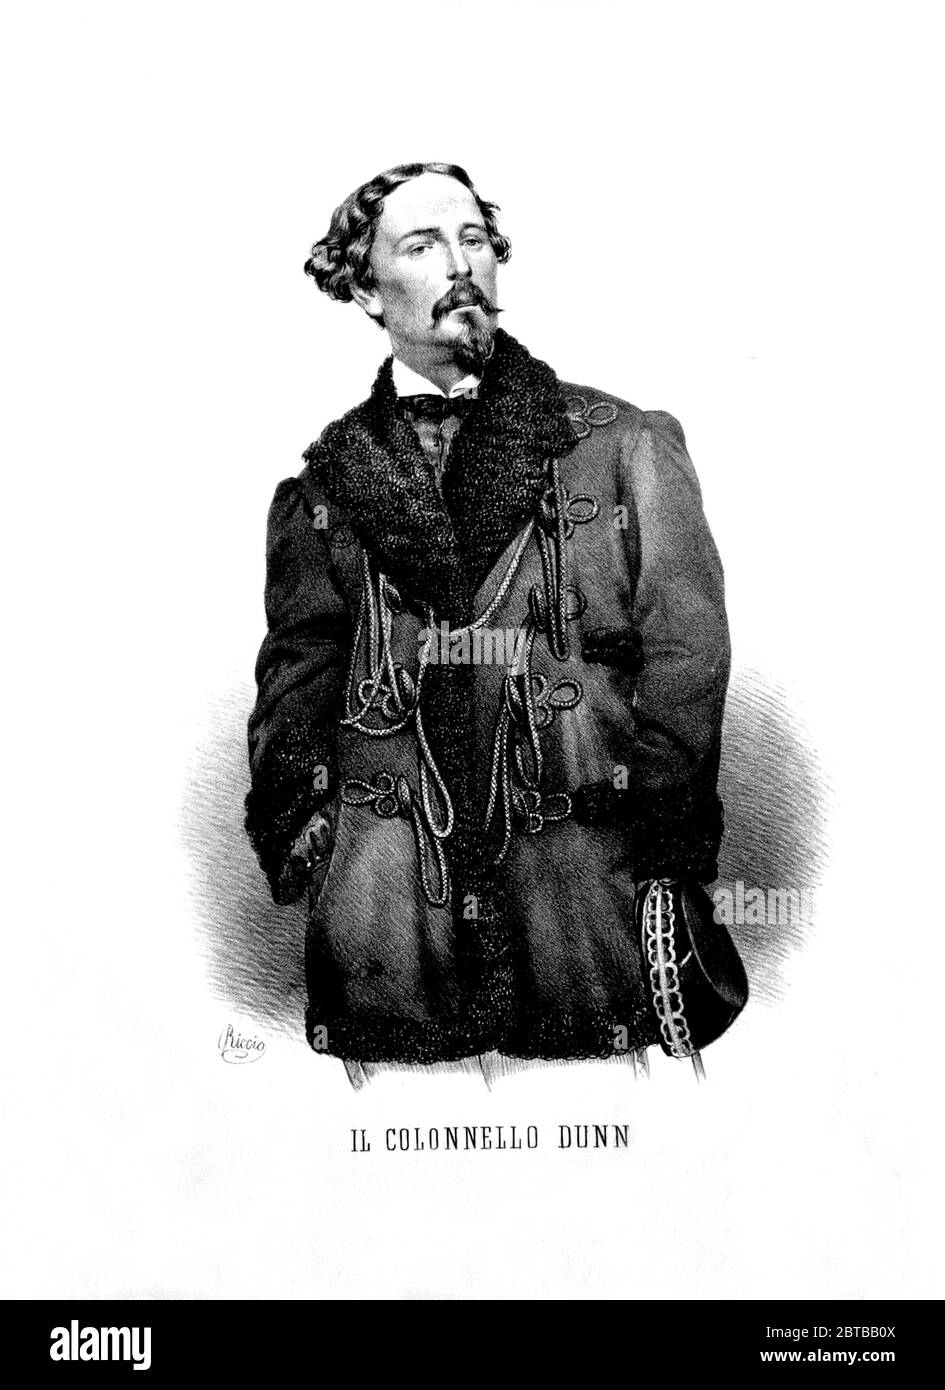 1860 , ITALIE : le british Colonnello Giovanni DUNN aka JOHN Clement DUNNE ( 1827 - 1906 ), un commandant au service des troupes italiennes à SPEDIZIONE DEI MILLE avec les soldats garibaldini de GIUSEPPE GARIBALDI en Sicile , pour la réunion politique de l'Italie . Portrait gravé par Riccio , pubblié en 1862 . - Colonel - Unità d'Italia - RISORGIMENTO - ITALIA - FOTO STORICHE - HISTOIRE - SICILE - GARIBALDI --- Archivio GBB Banque D'Images